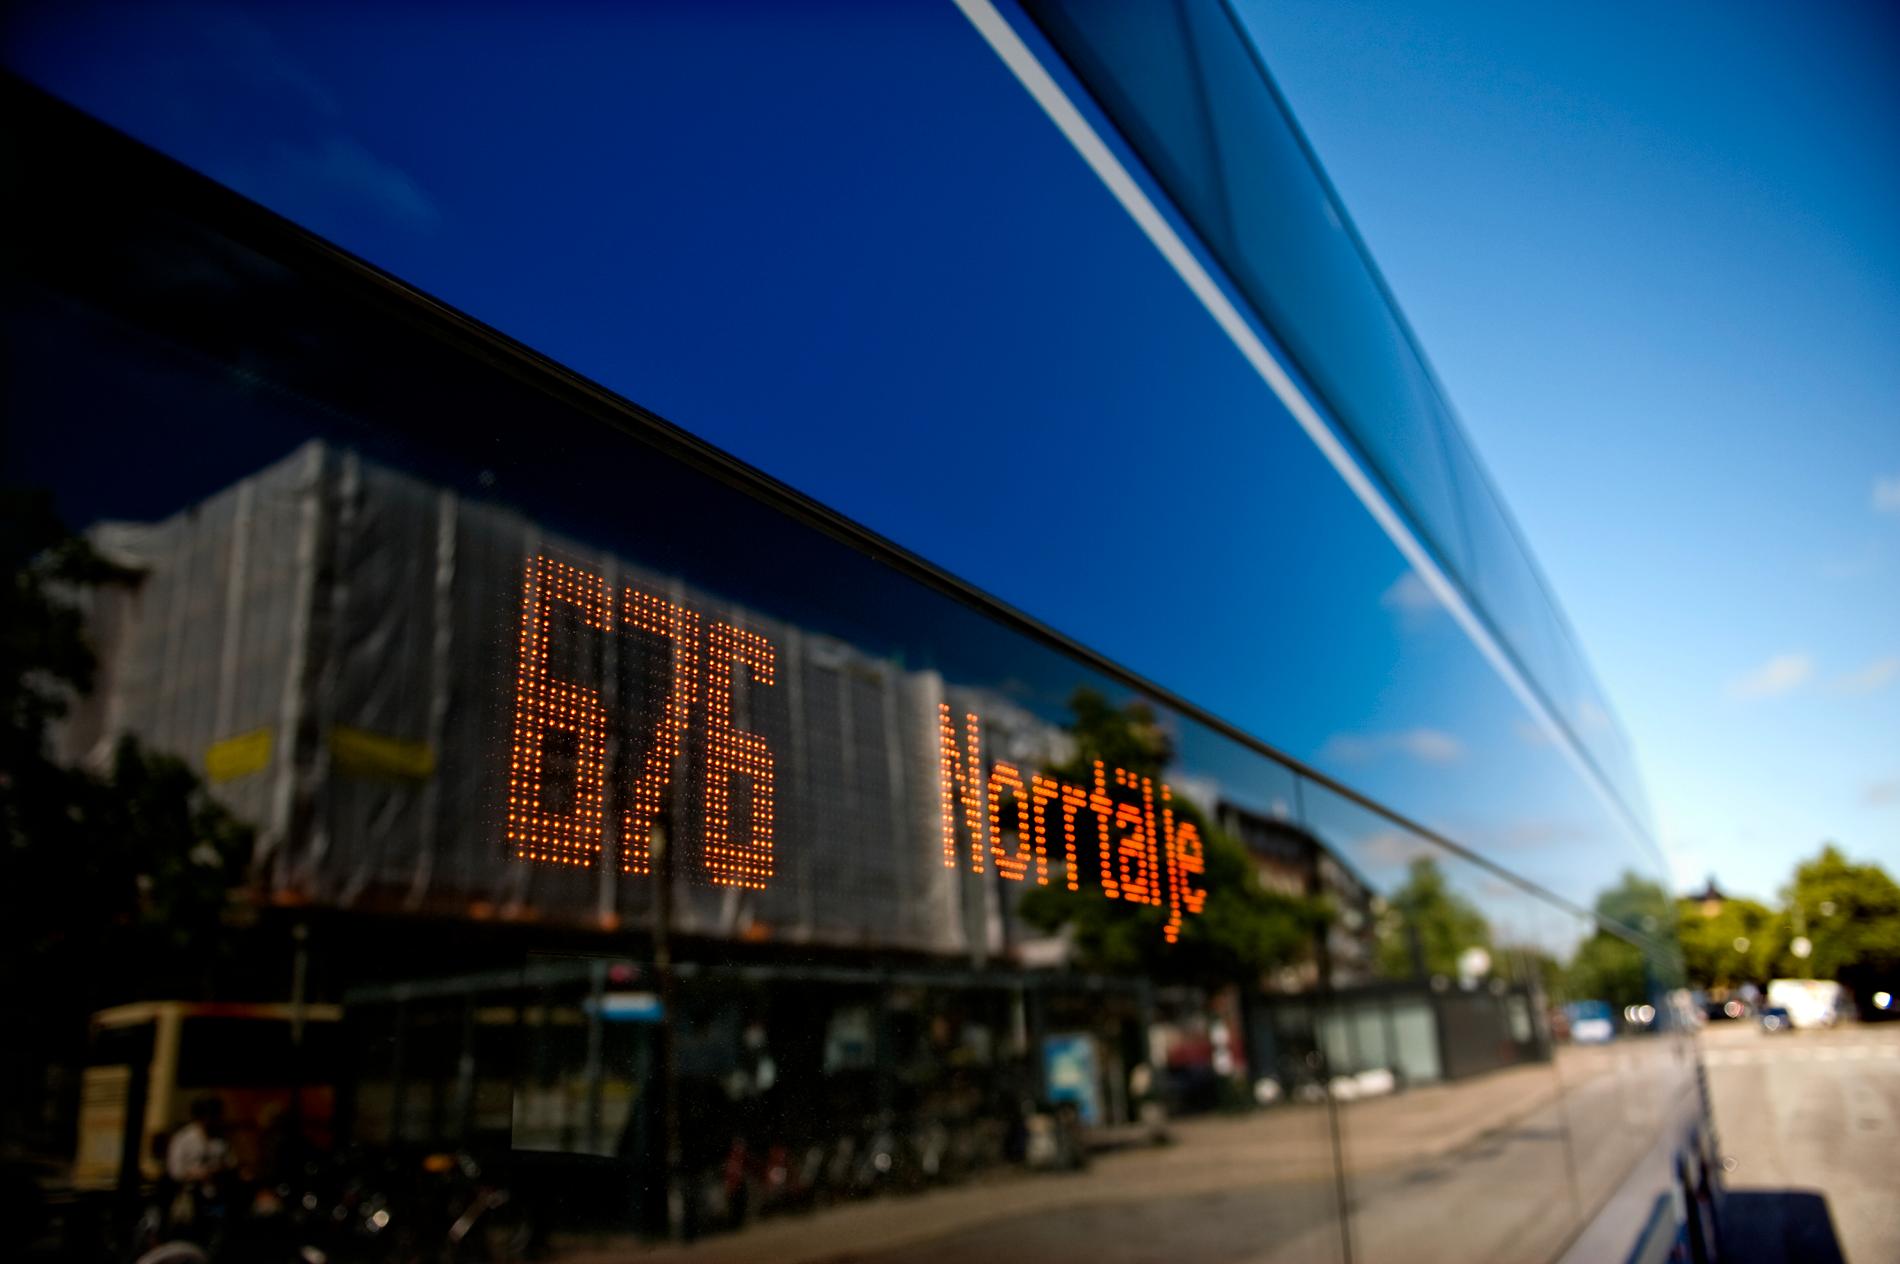 En buss på linje 676 mellan Stockholm och Norrtälje började brinna vid midnatt. Arkivbild.